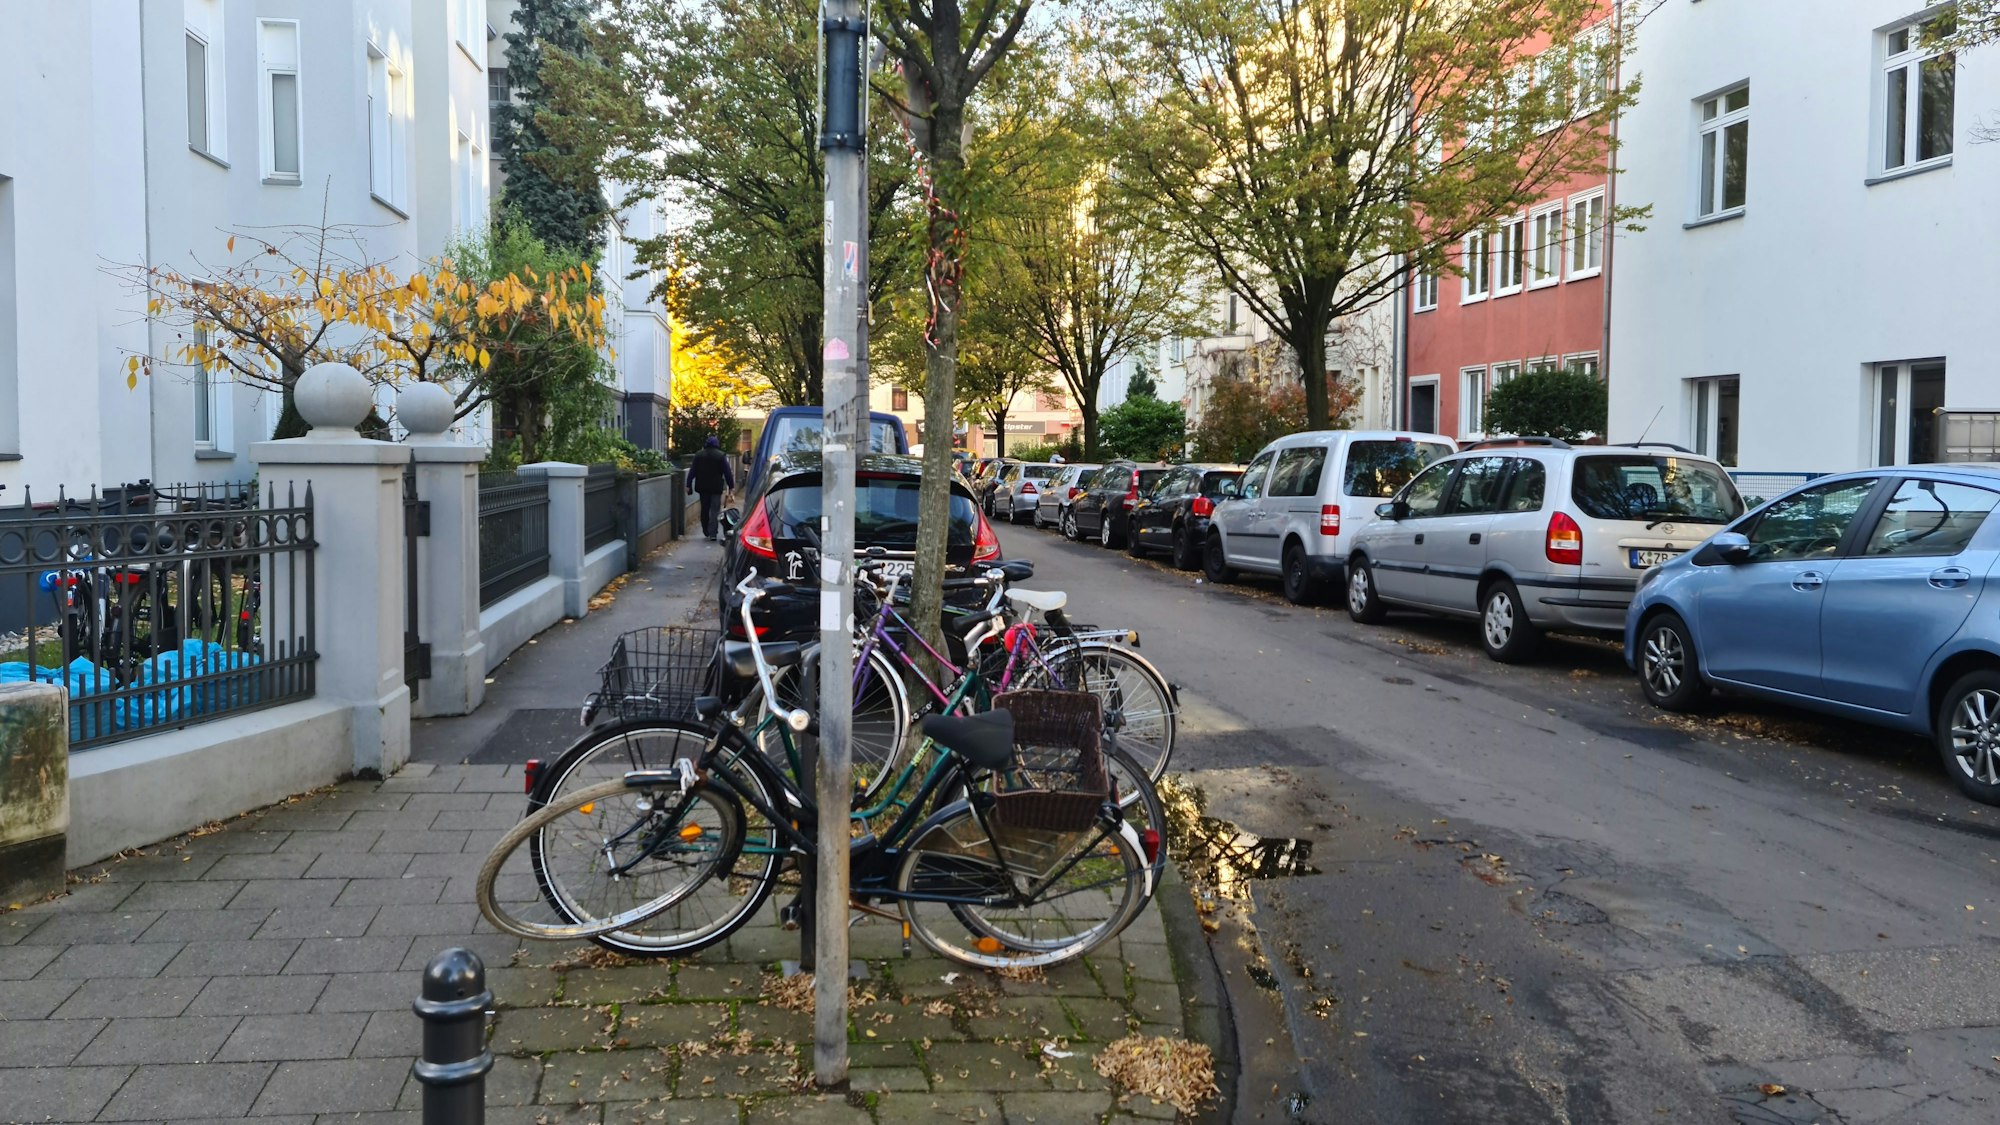 Blick in eine Straße mit parkenden Autos und abgestellten Fahrrädern